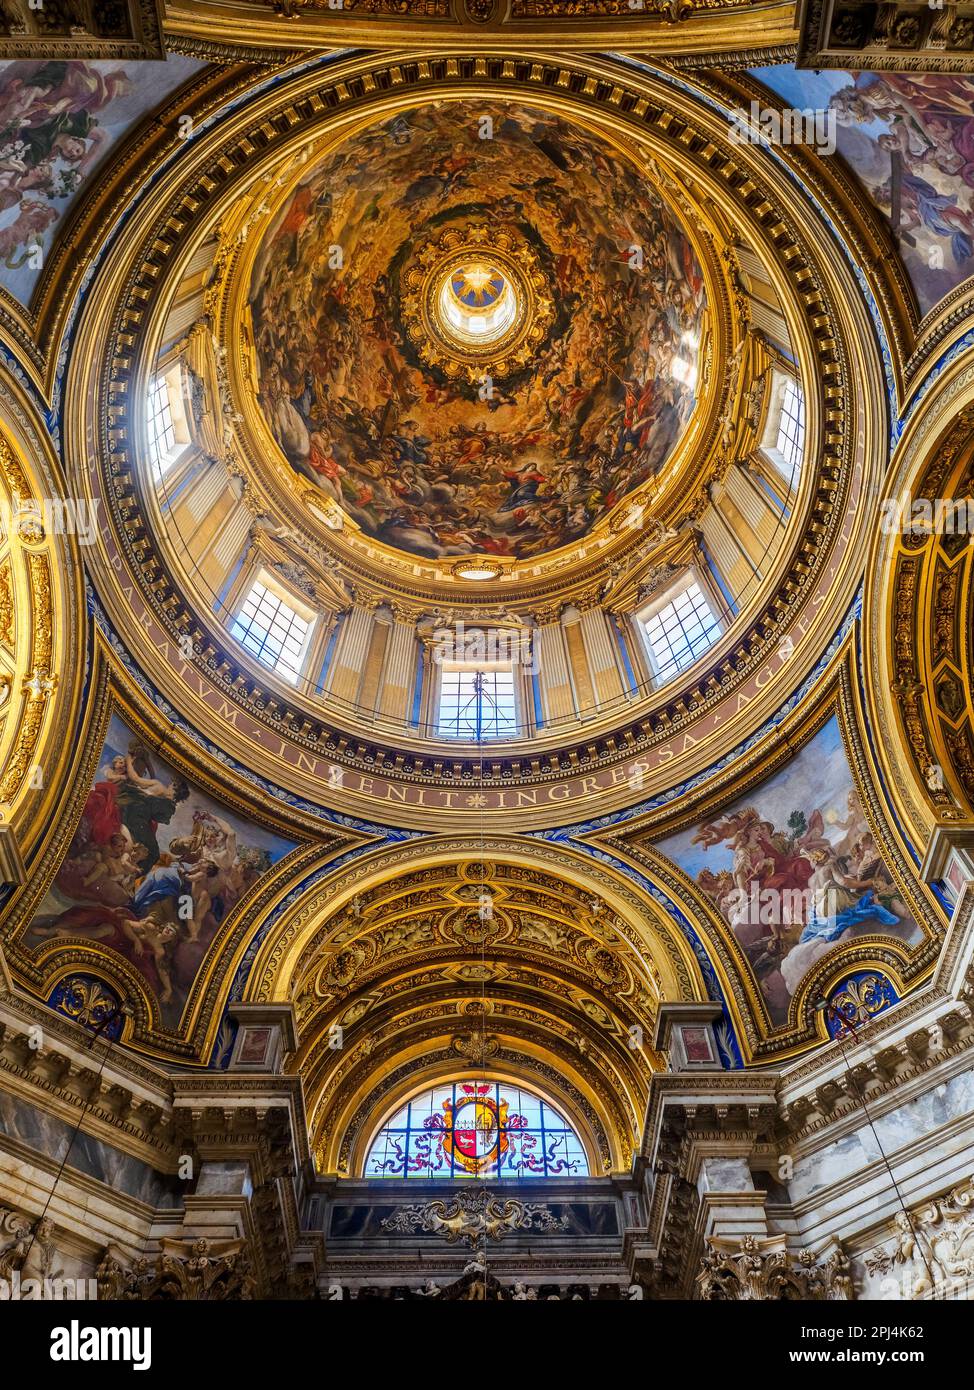 Gewölbe und Kuppel von Sant'Agnese in der Basilika Agone in Rom - Italien Stockfoto